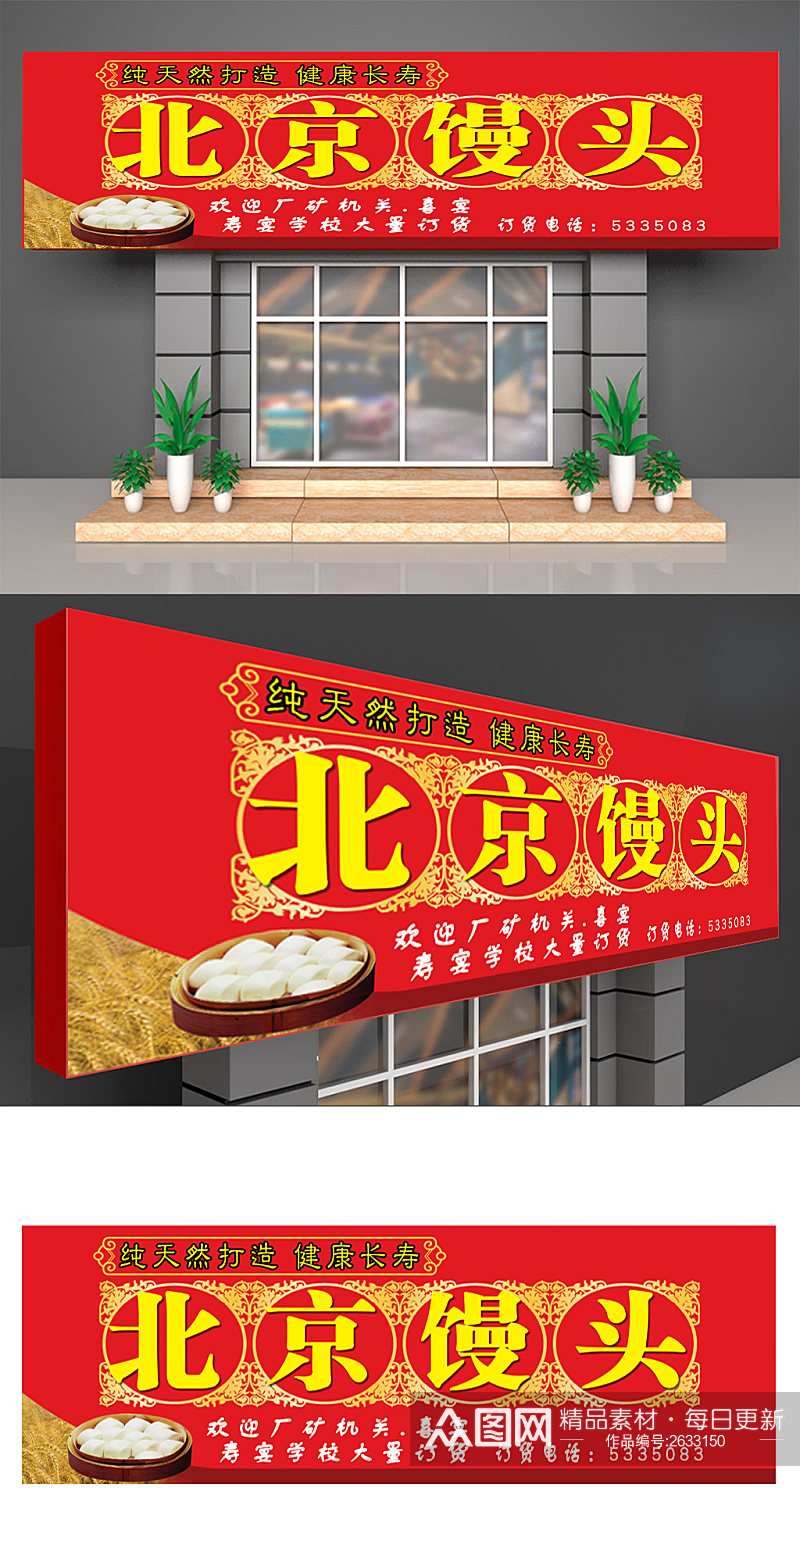 北京馒头早餐店喷绘门头招牌素材